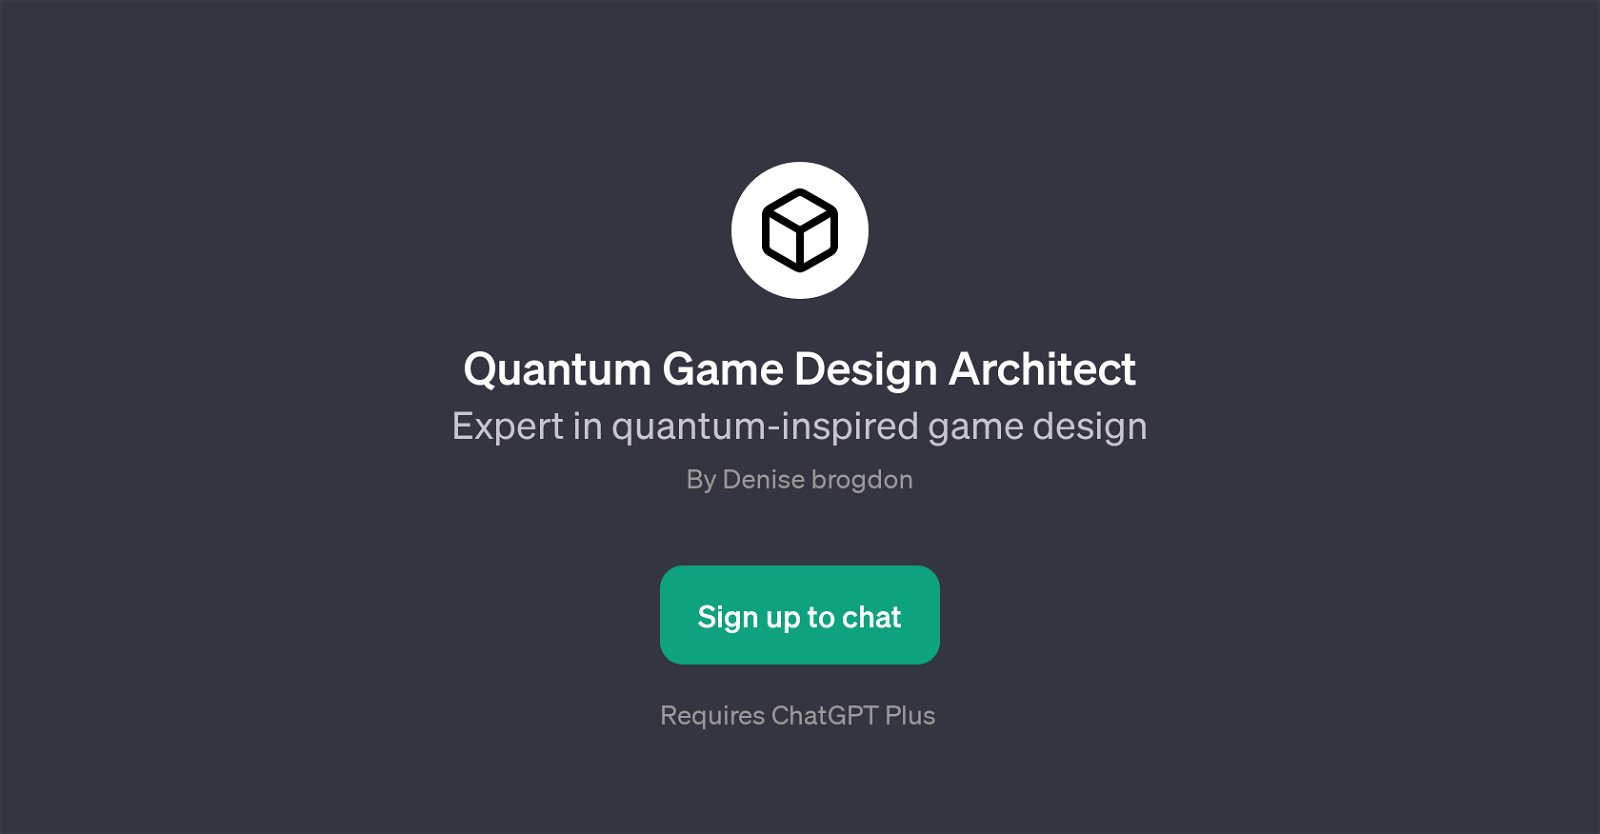 Quantum Game Design Architect website